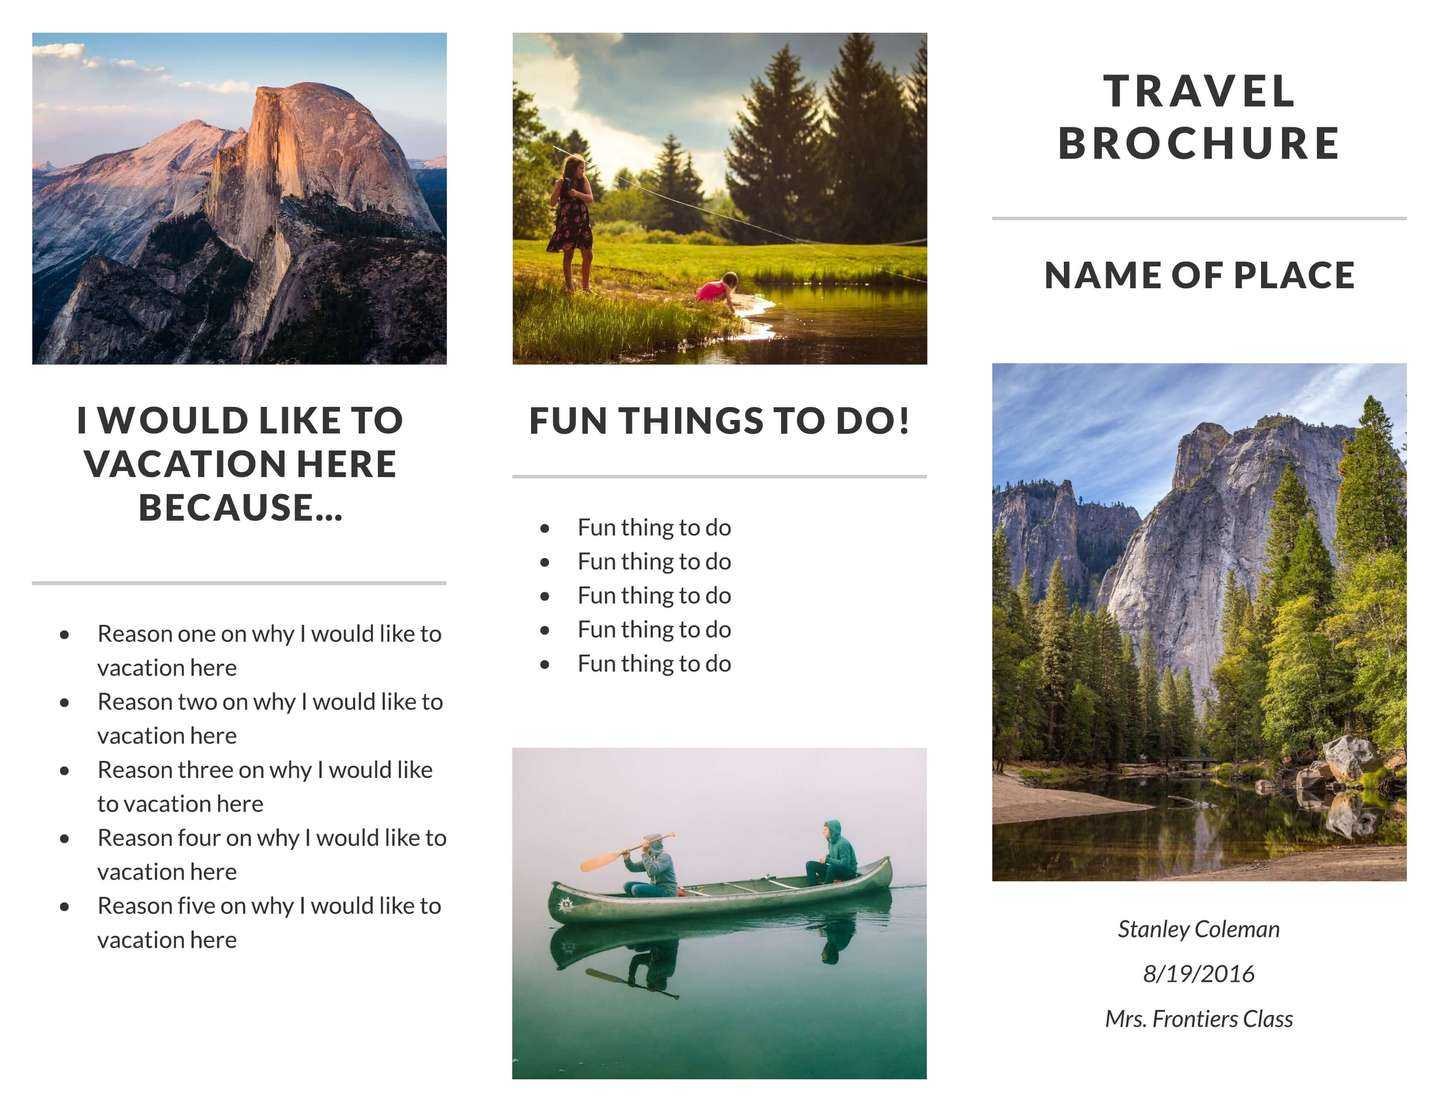 Recreation Travel Brochure Template | Lucidpress Throughout Travel Brochure Template For Students